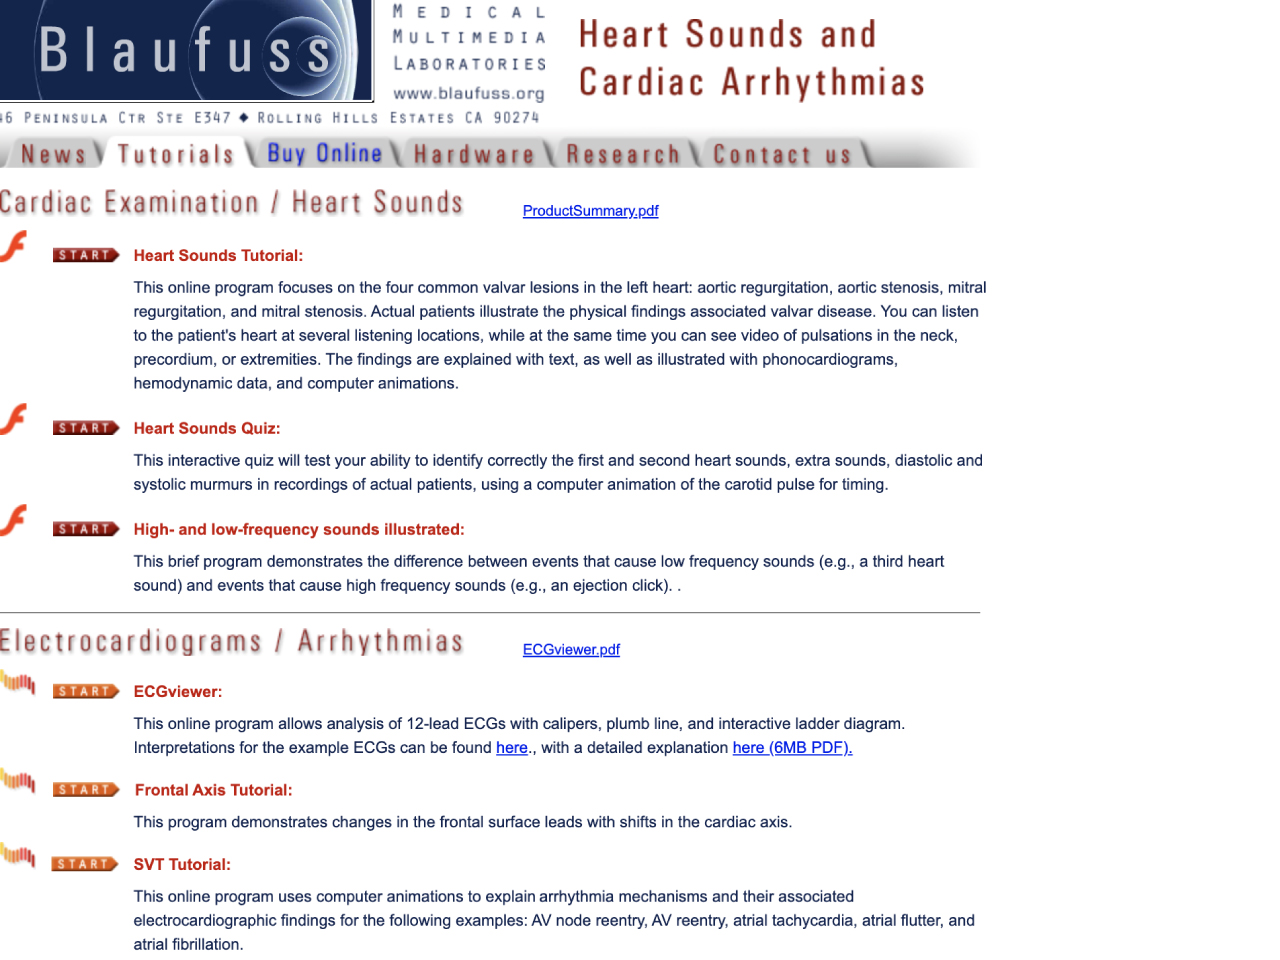 Heart Sounds and Cardiac Arrhythmias Tutorial